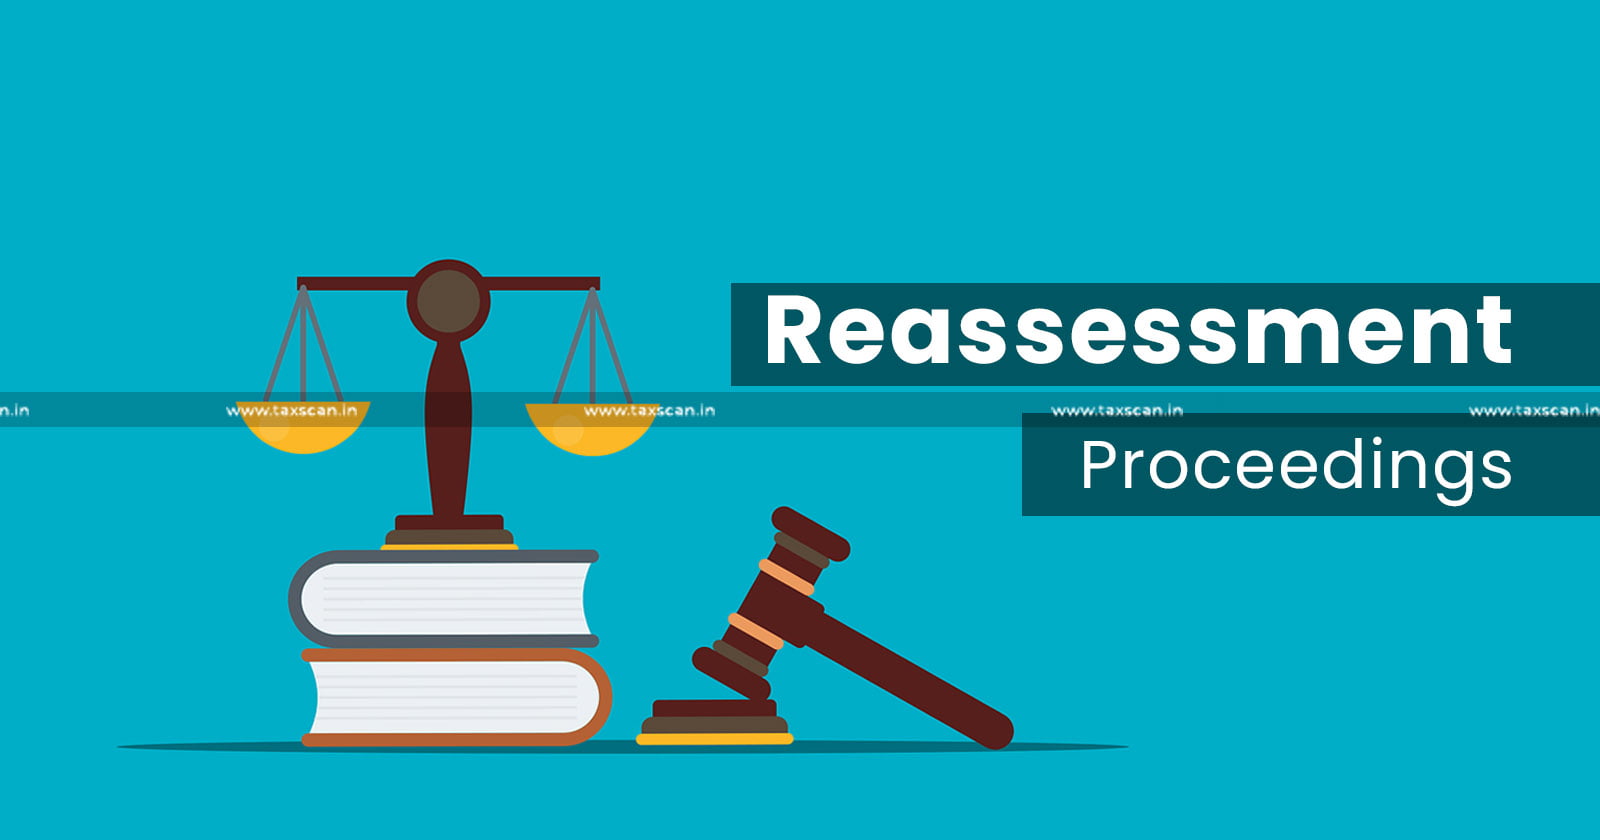 ITAT - ITAT Ahmedabad - Reassessment - Reassessment proceedings - Income Tax - Tax news - TAXSCAN